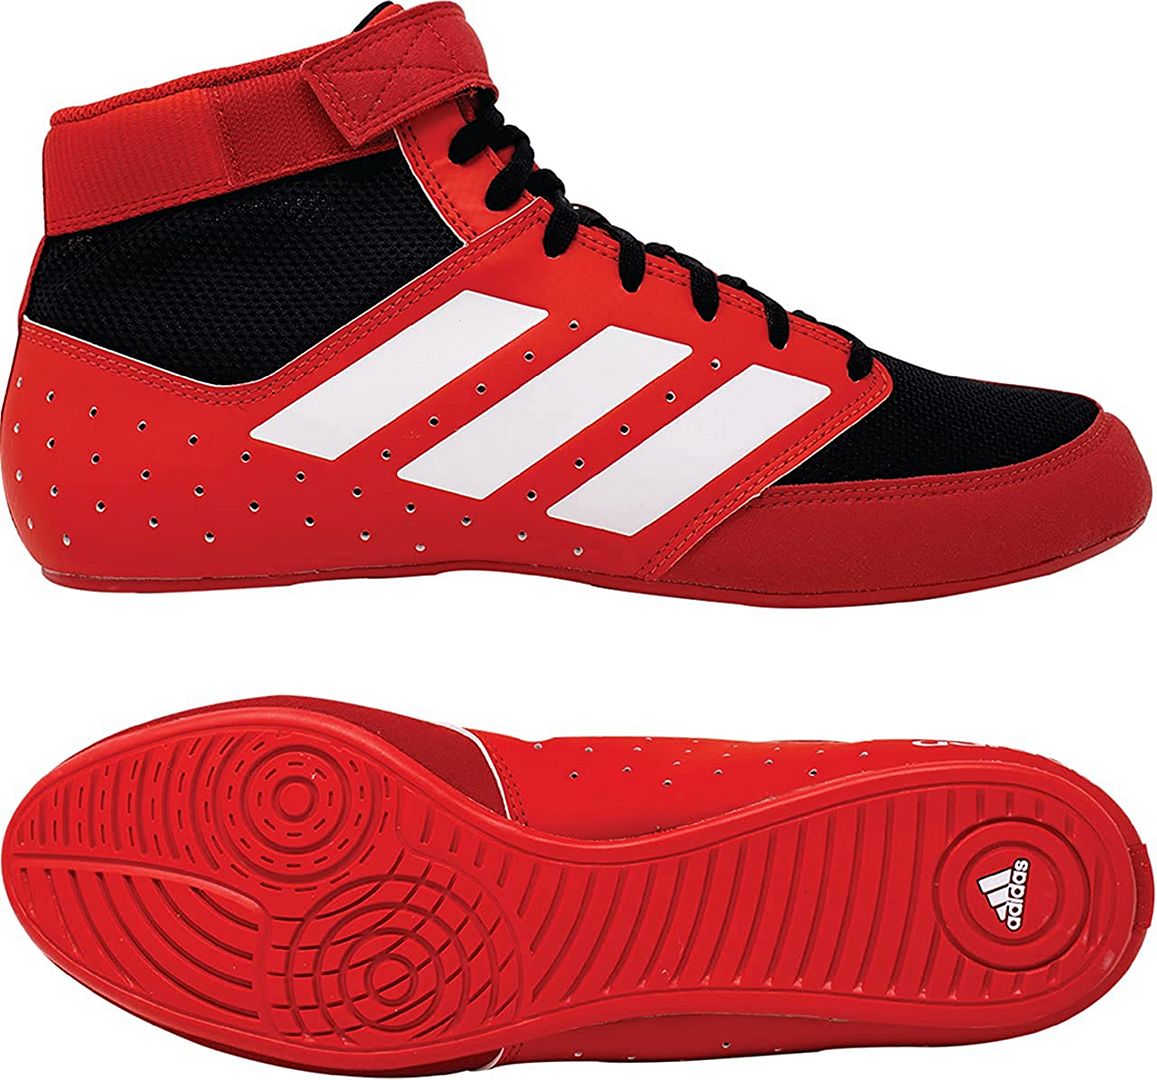 Adidas Combat Speed 5 Wrestling Shoes Preto-Vermelho